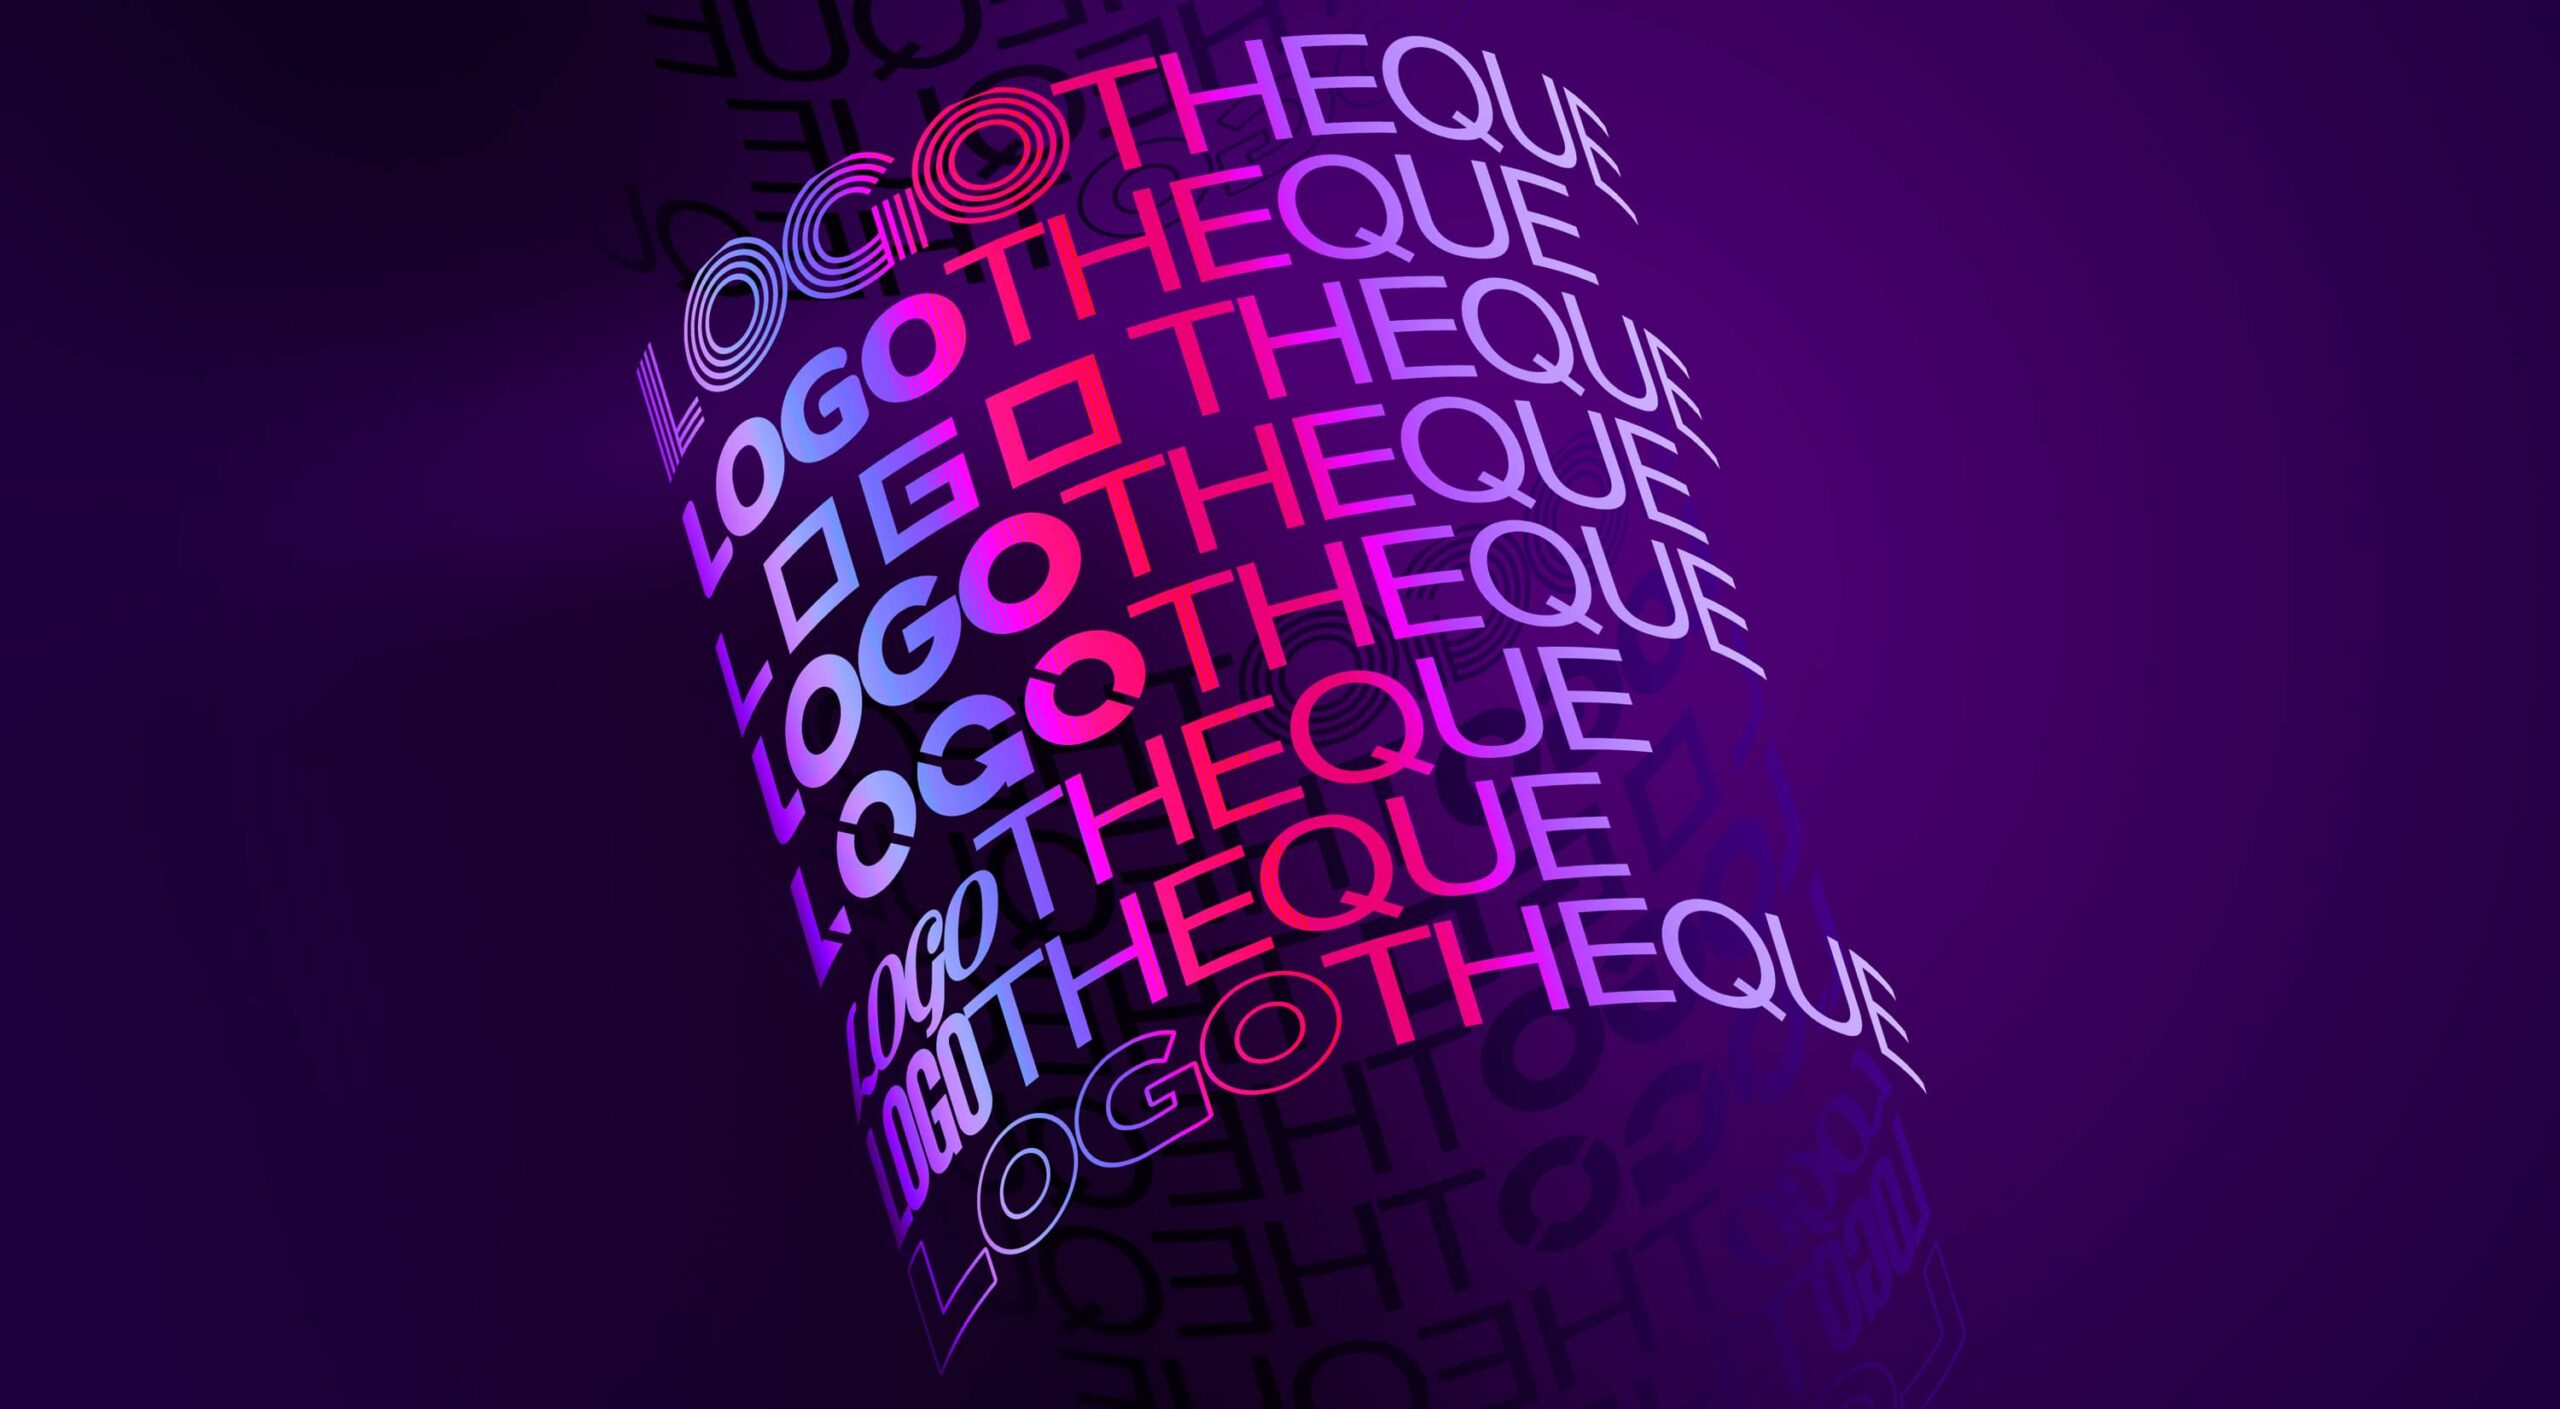 Cilindro con la palabra logotheque en varios formatos